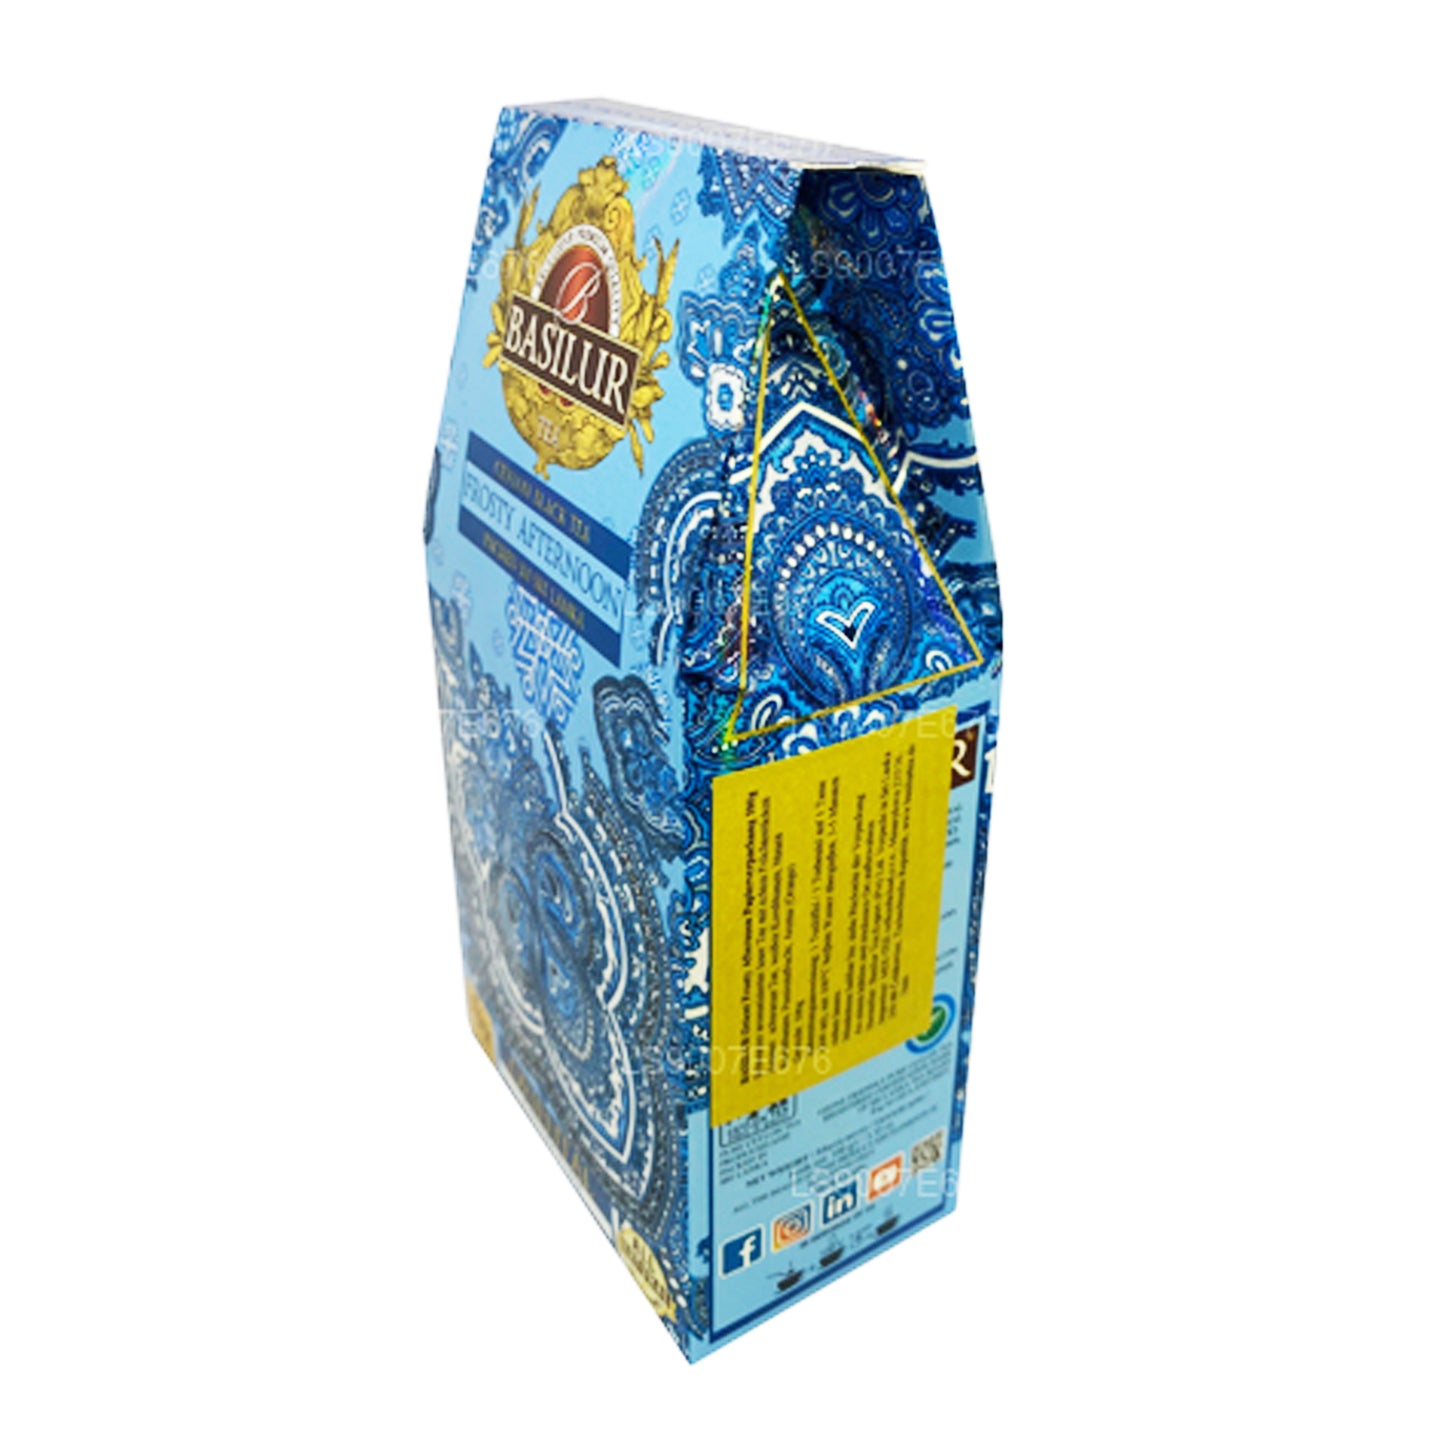 Basilur (Oriental) Frosty Afternoon Ceylon Black Tea (100g)